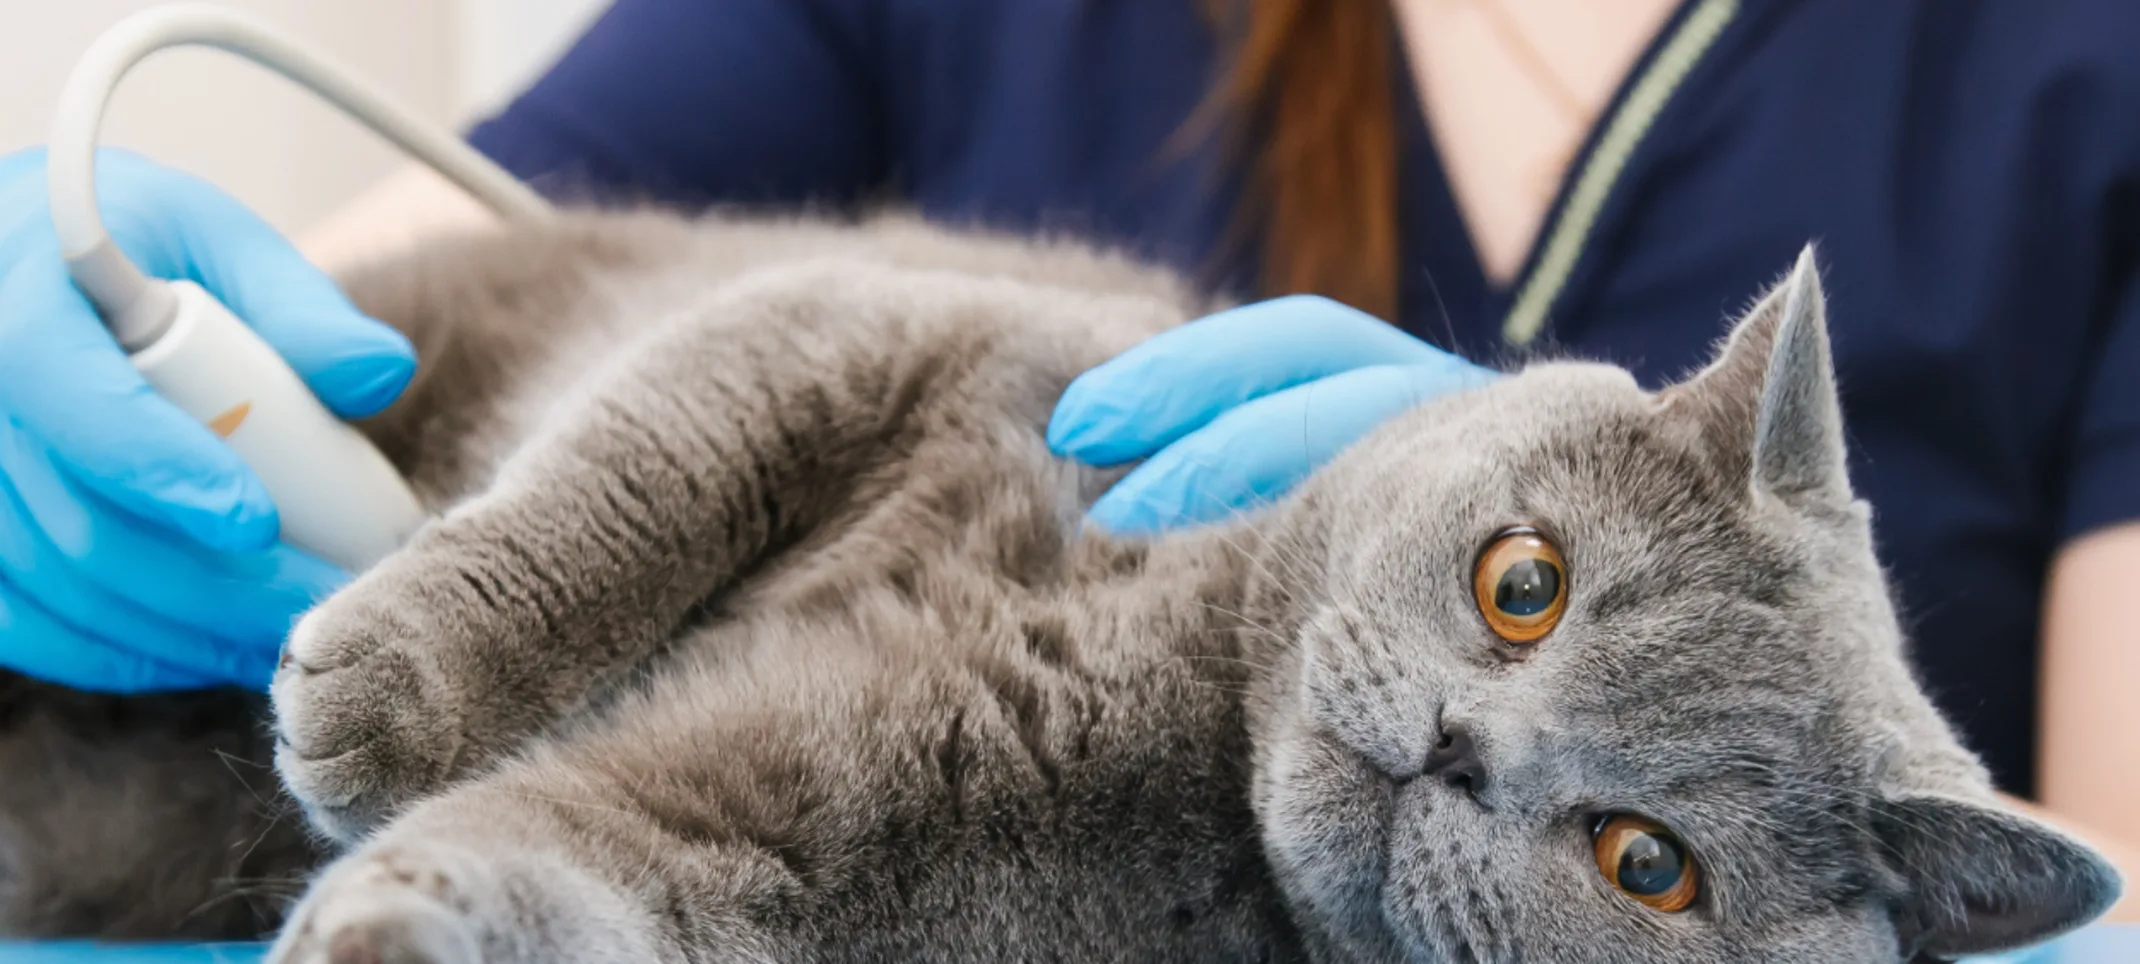 A grey cat receiving an ultrasound